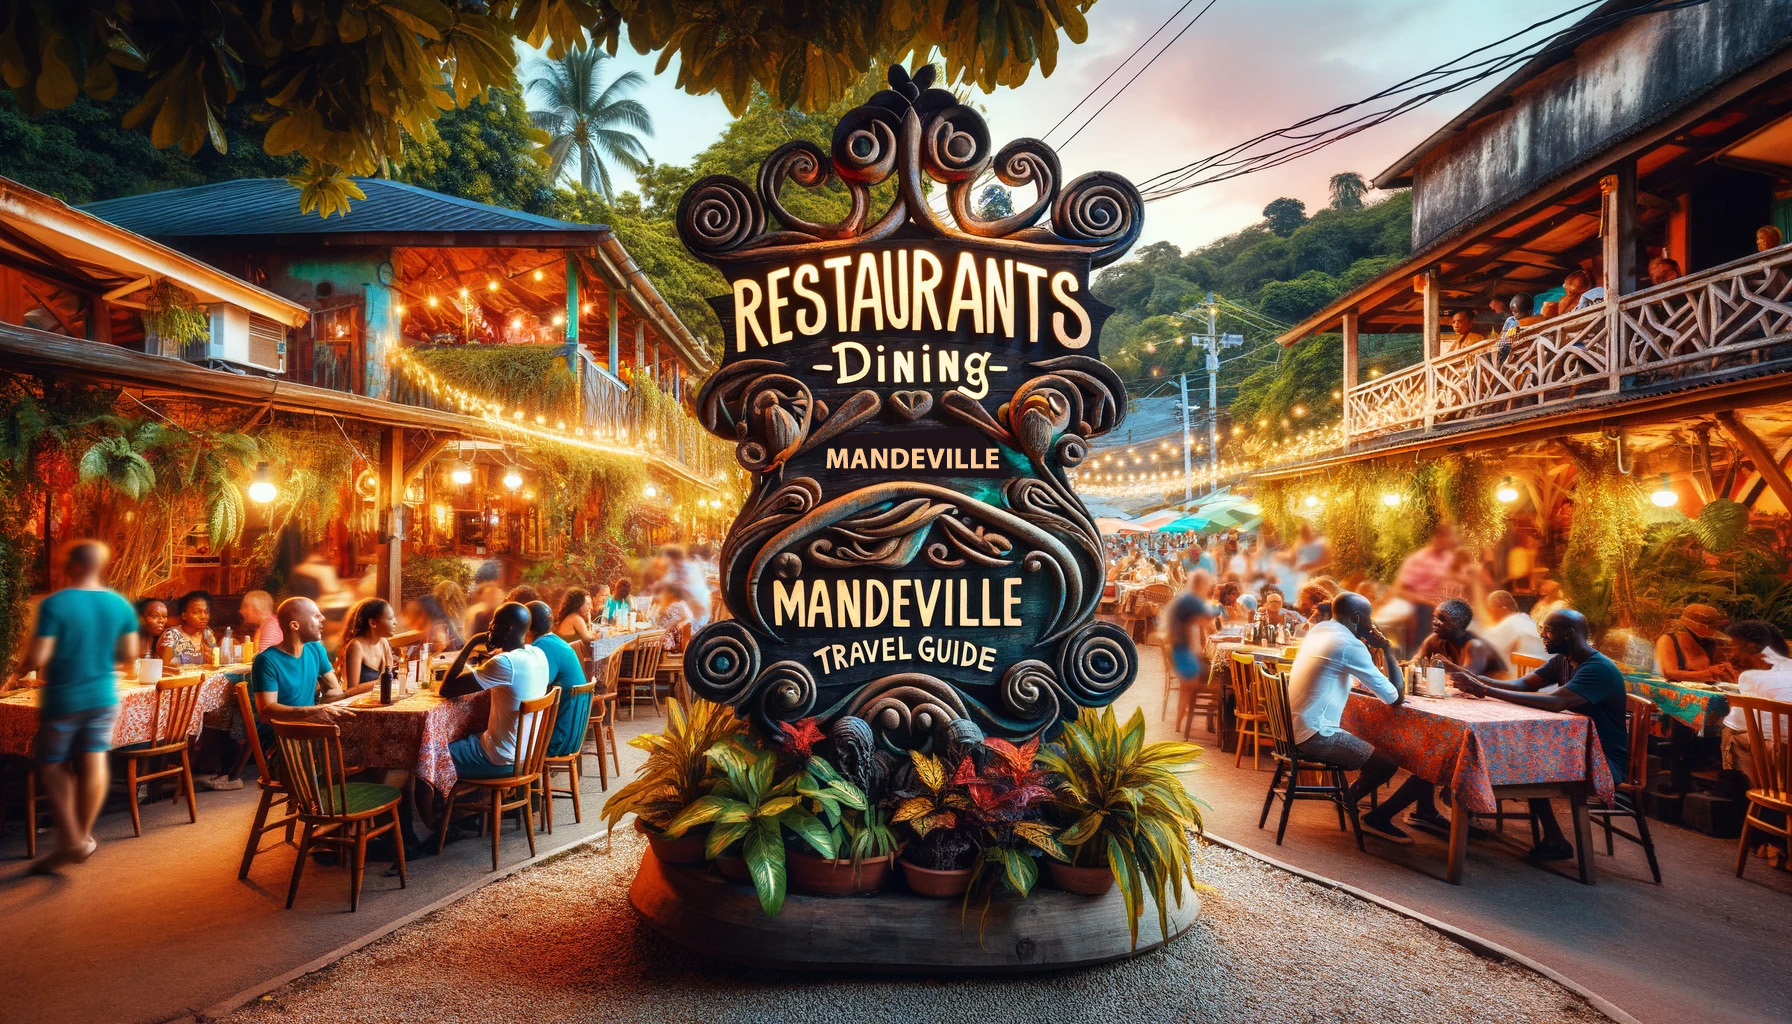 Restaurants - Dining in Mandeville - Mandeville Travel Guide